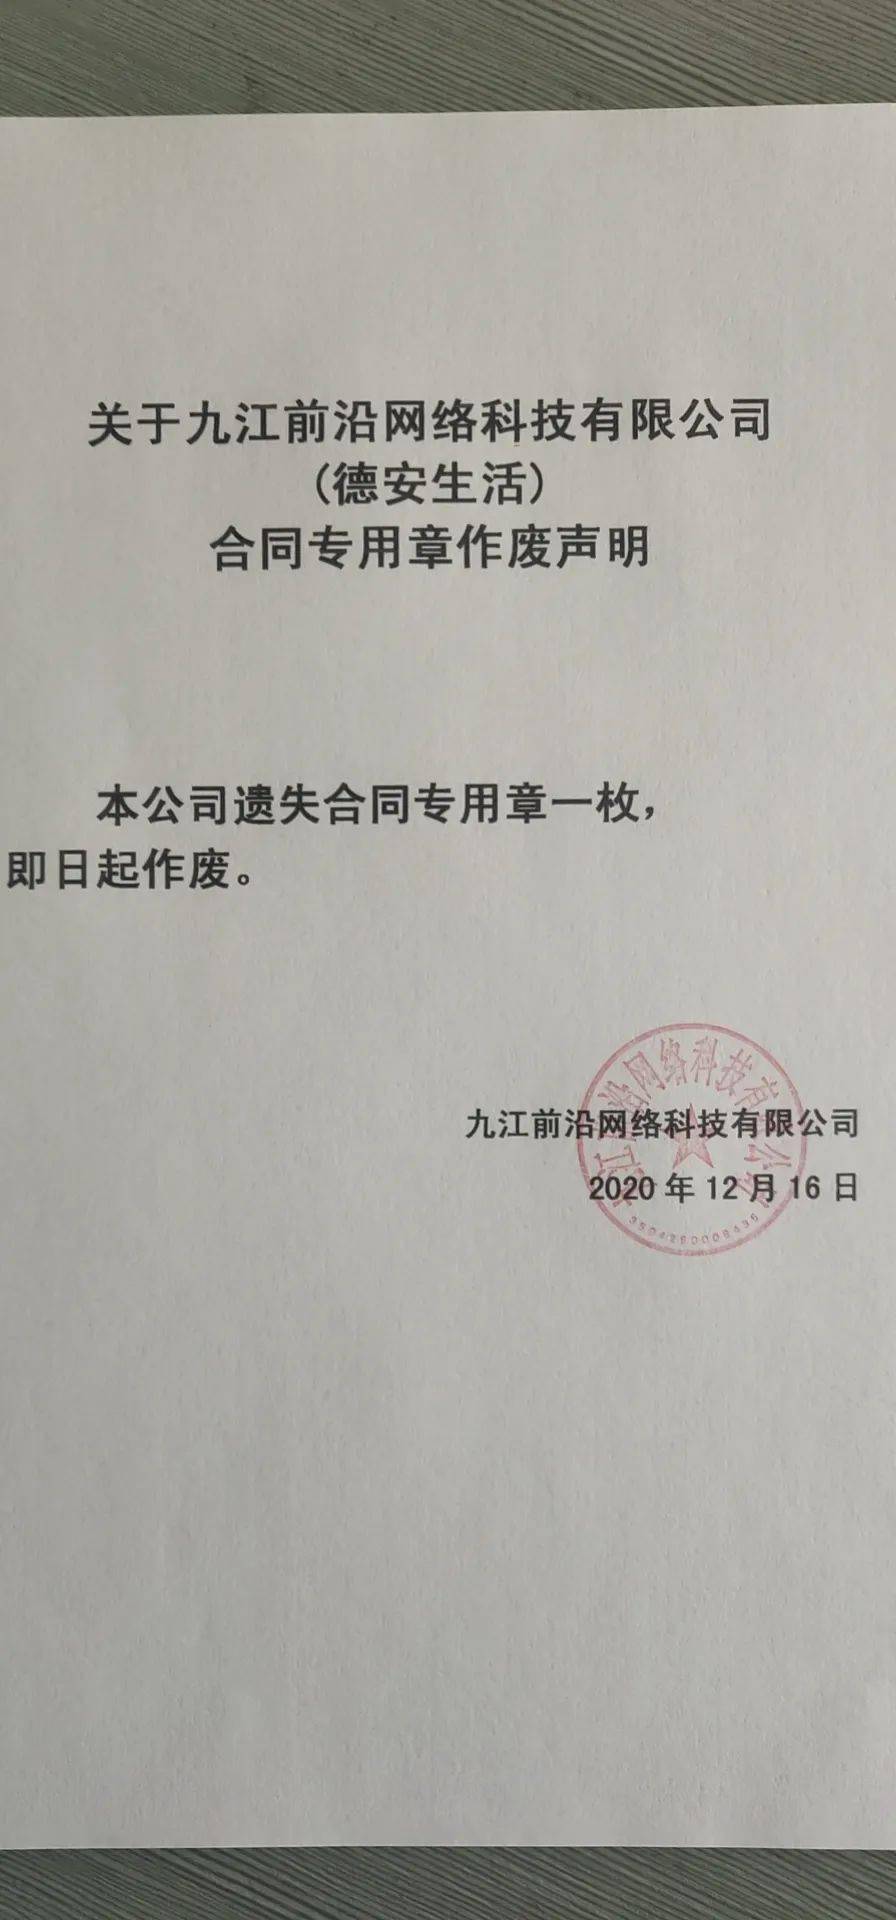 九江前沿网络科技有限公司(德安生活)合同专用章作废声明